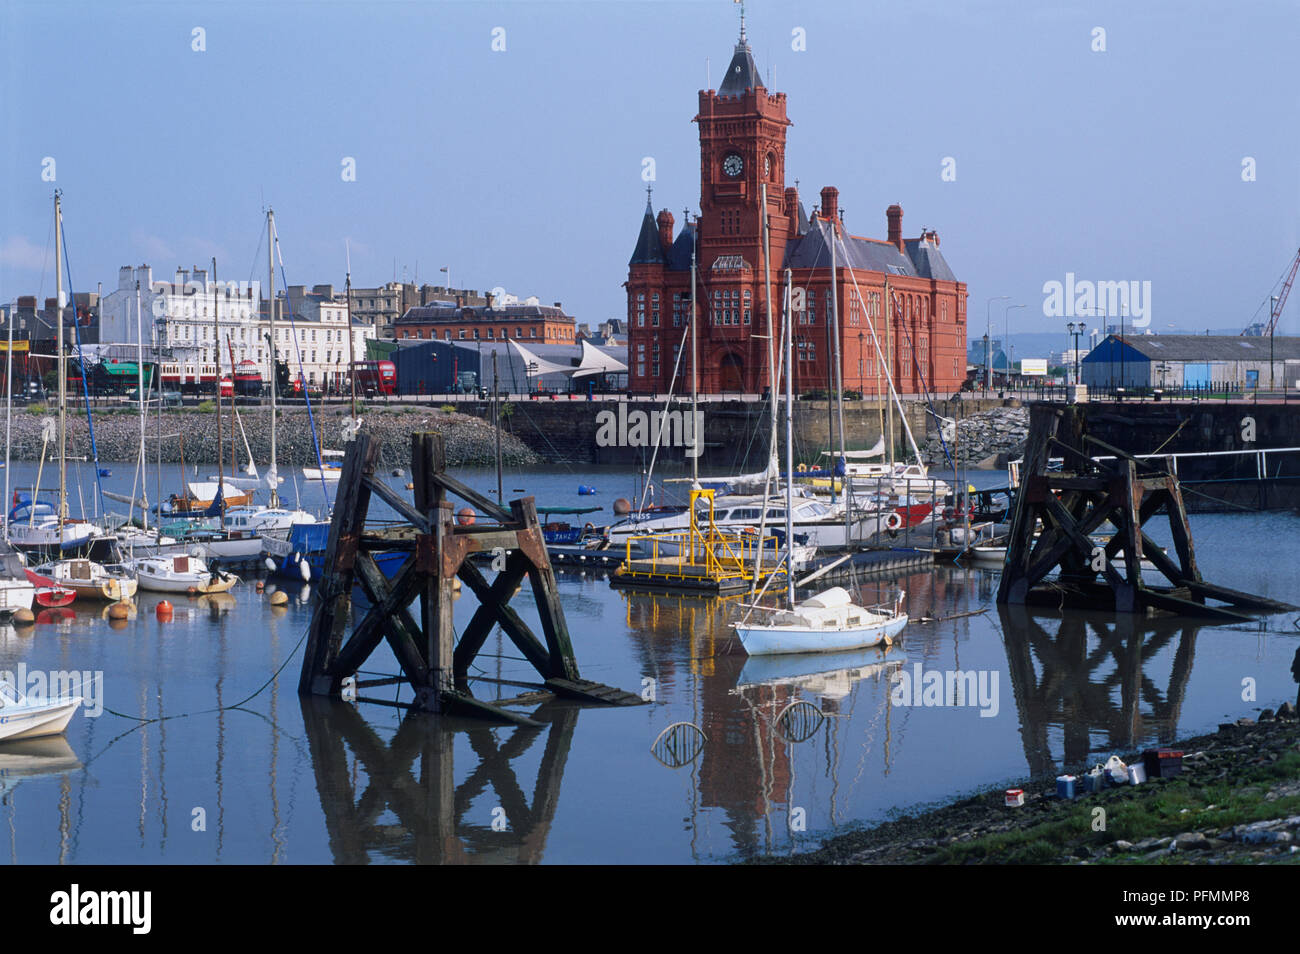 Gran Bretaña, País de Gales, Cardiff, del siglo XIX, edificio Pierhead con vistas a la bahía de Cardiff Foto de stock